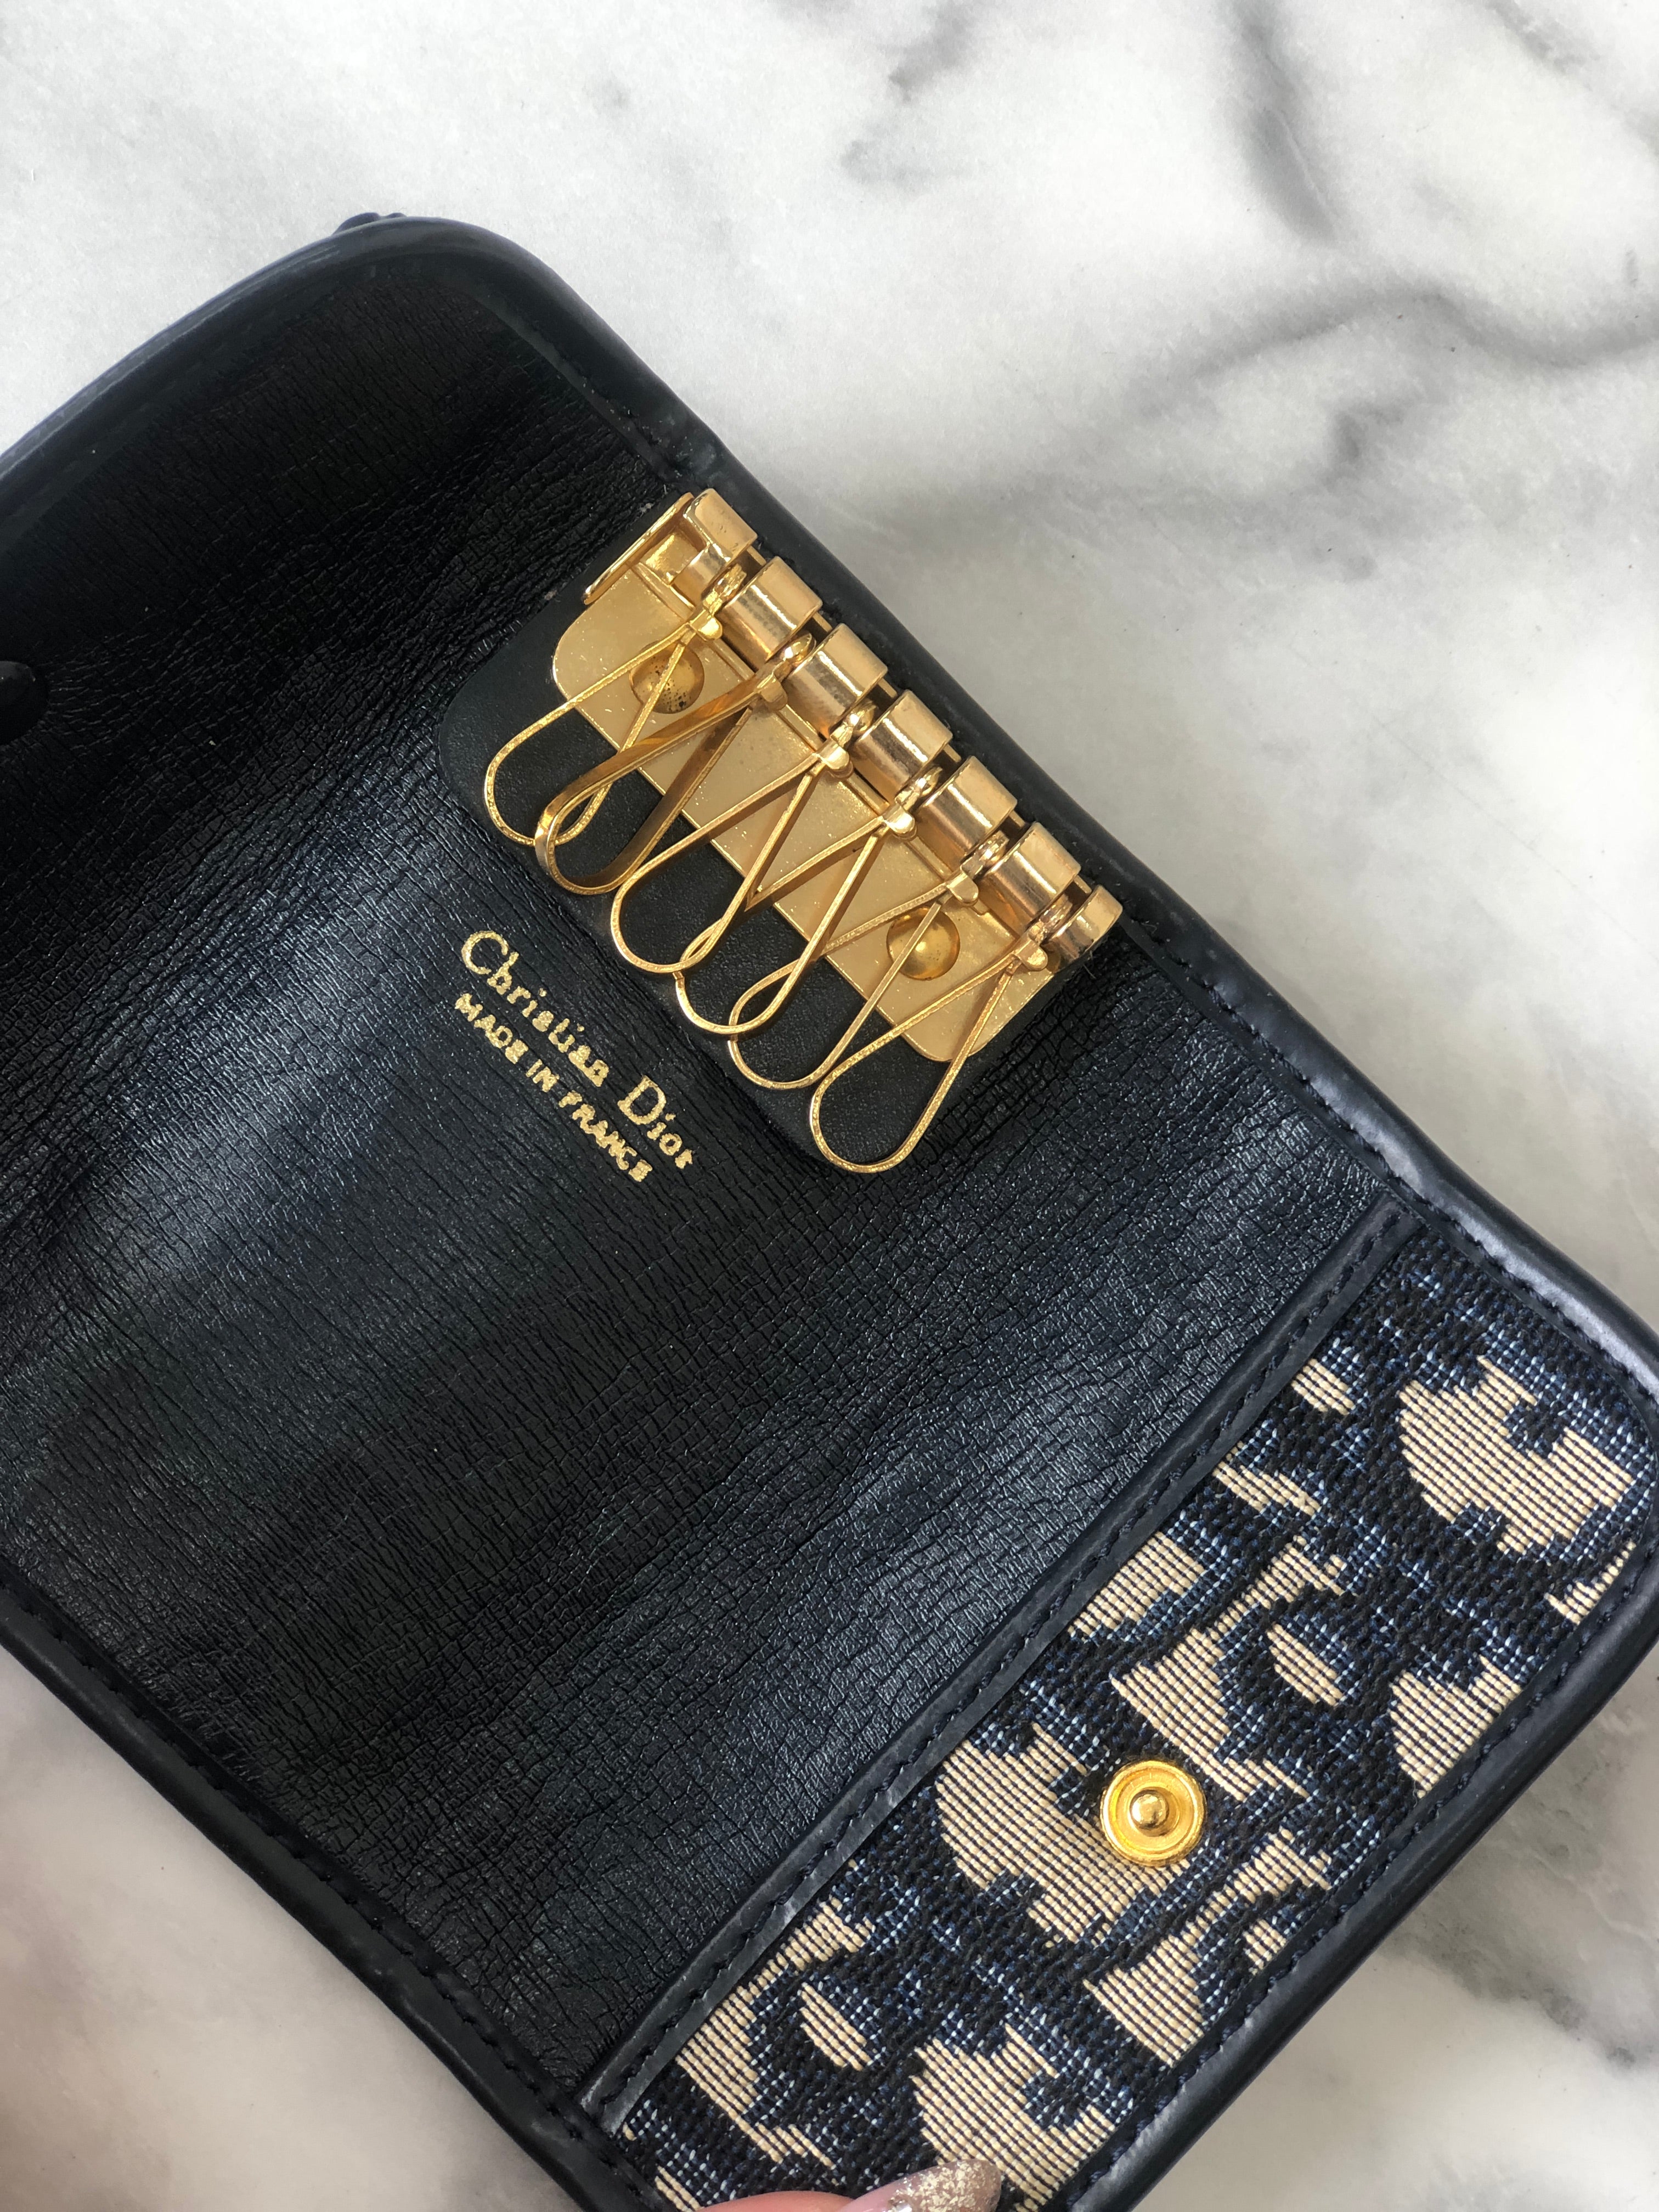 Christian Dior Trotter Jacquard Leather Key Case Navy Vintage i8hs8t